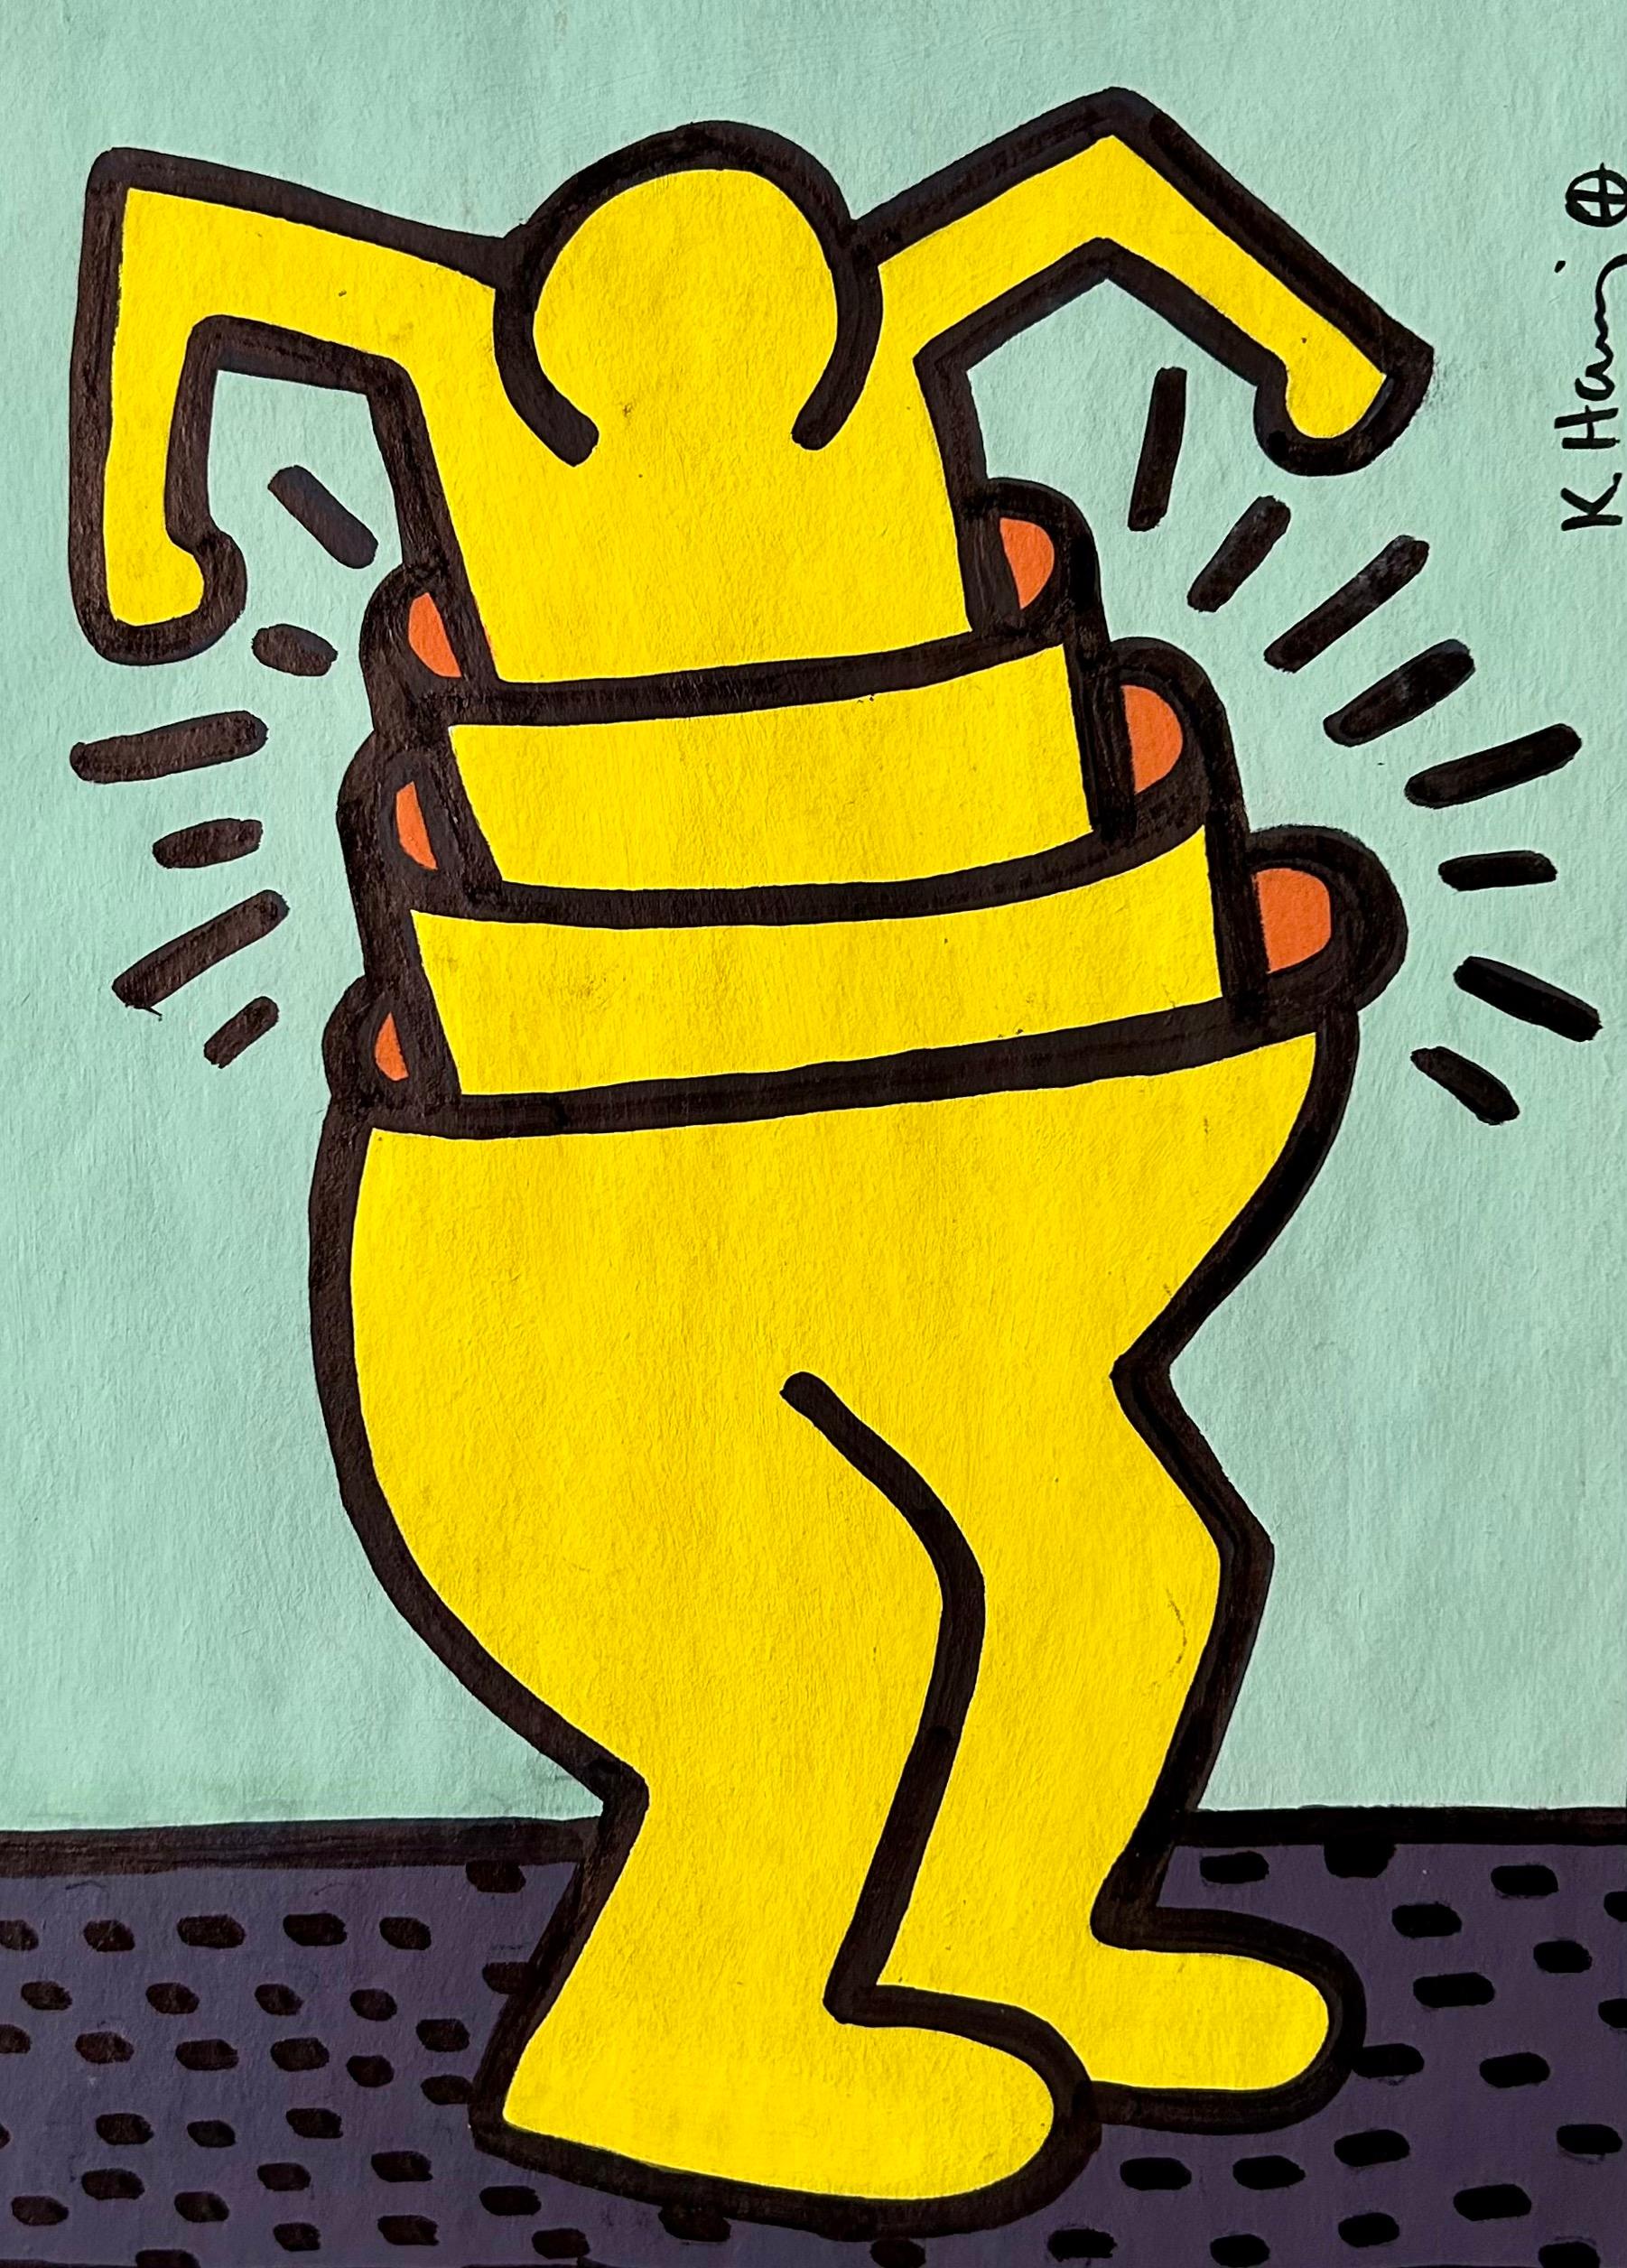 Dessin aux feutres de couleur sur papier fin réalisé par Keith Haring en 1989. Il est à rapprocher de la plus grande lithographie de l'artiste réalisé en 1986 et tirée à 100 exemplaires également intitulé "Cup man".

L'œuvre est vendue avec le